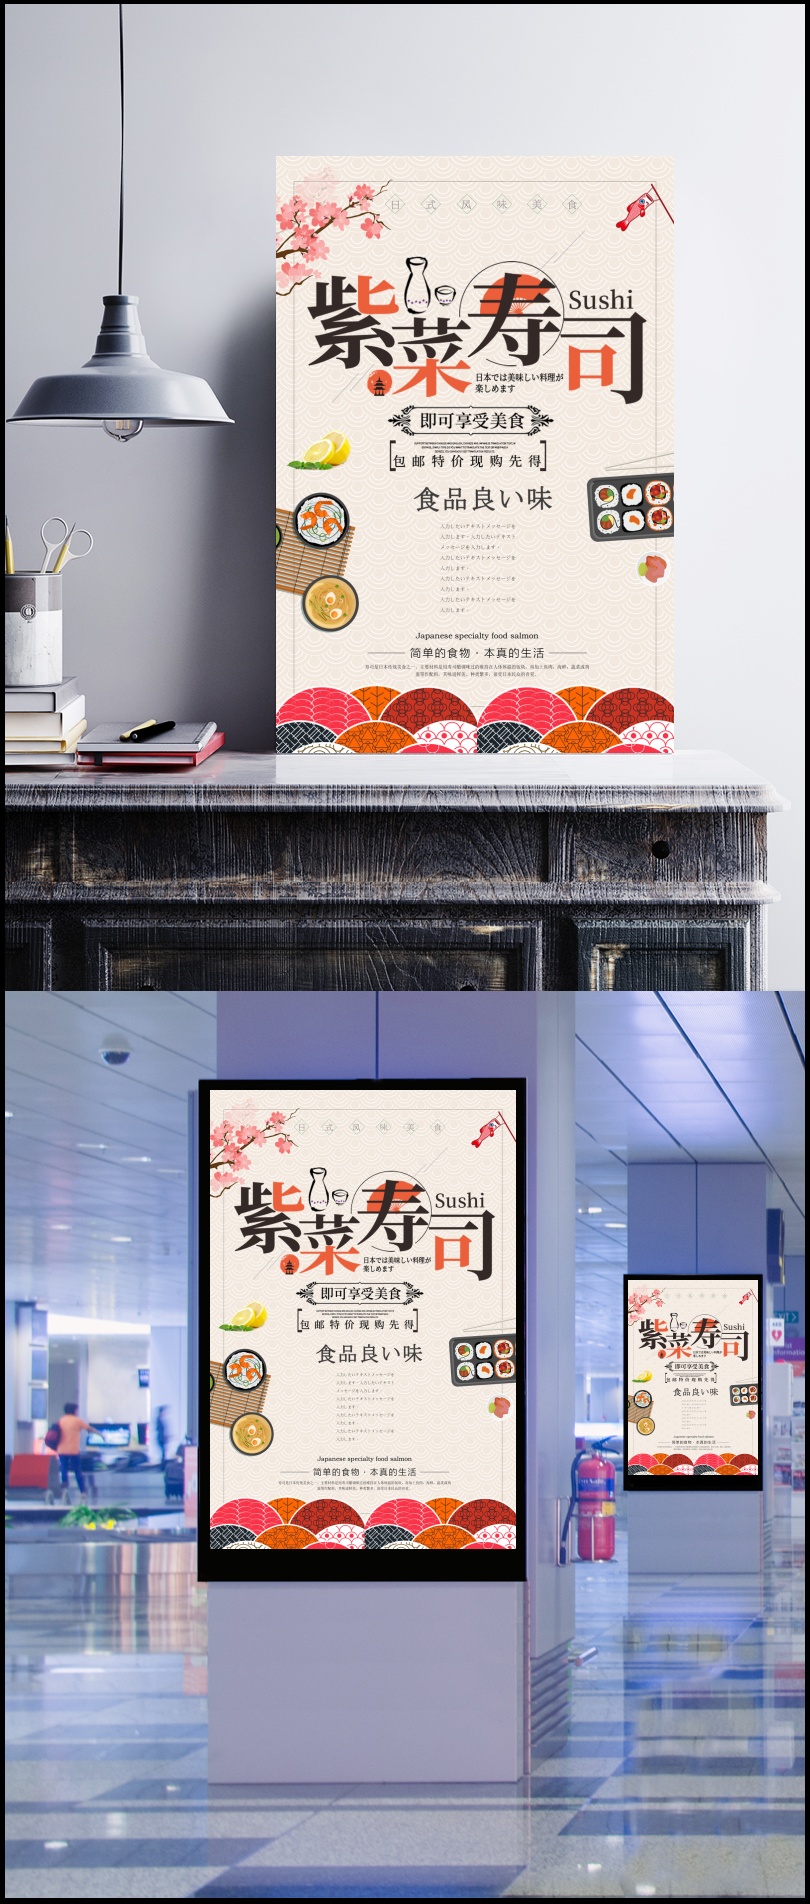 简洁插画风格日系美食日本料理寿司海报设计